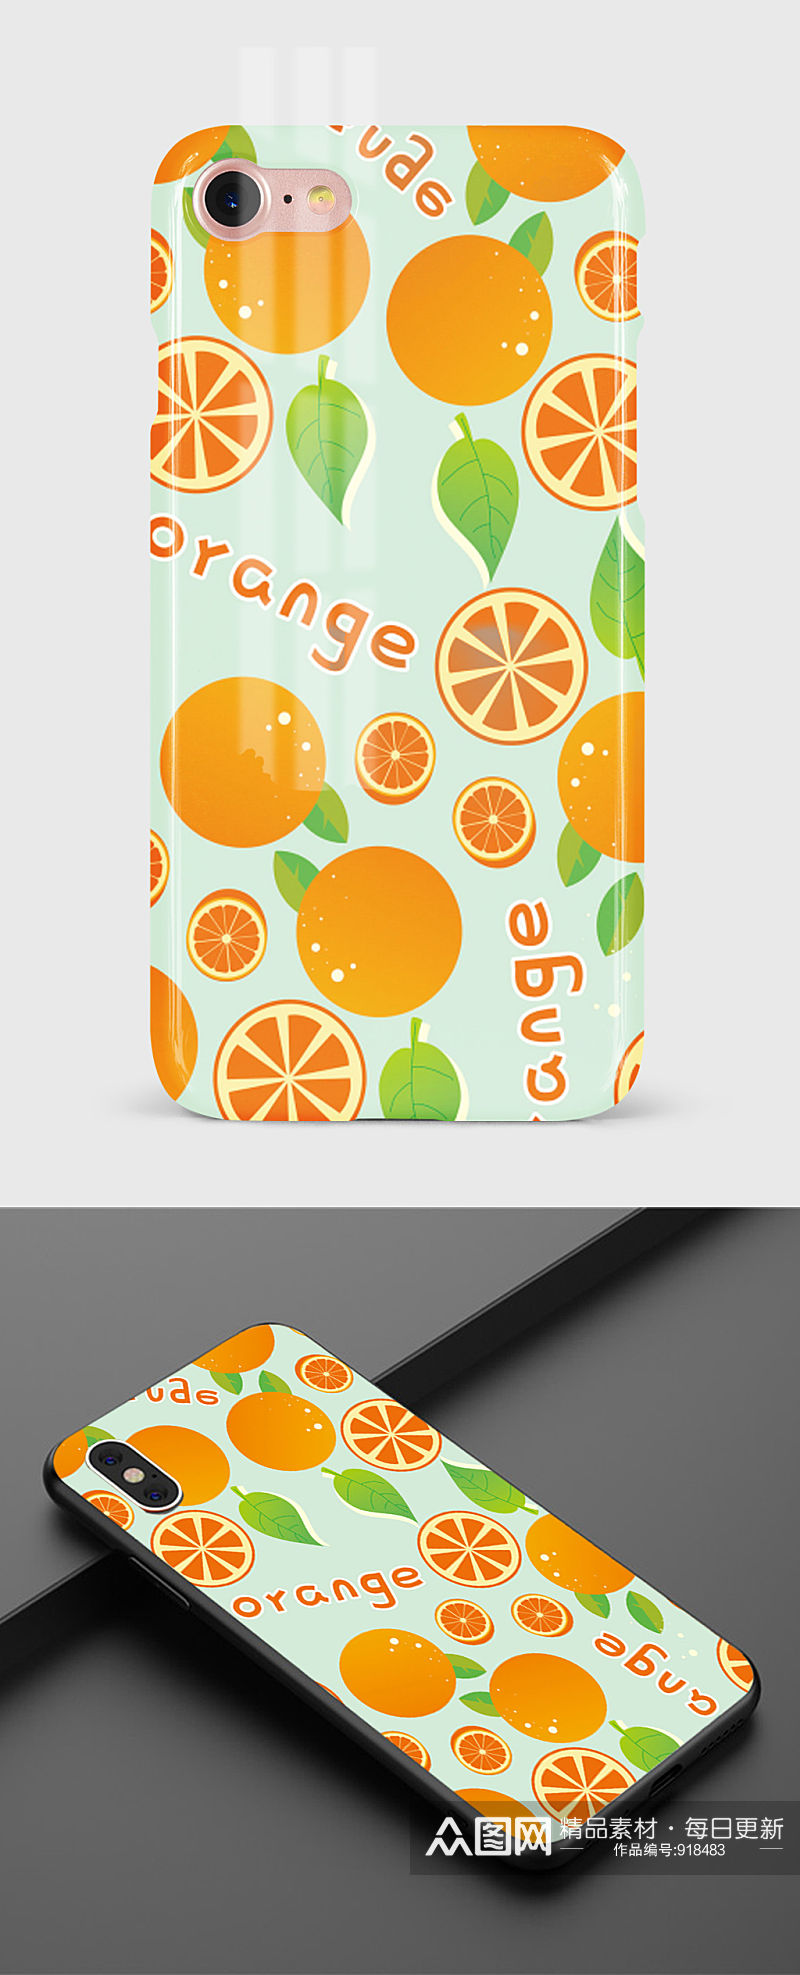 水果清新橙手机壳包装设计素材